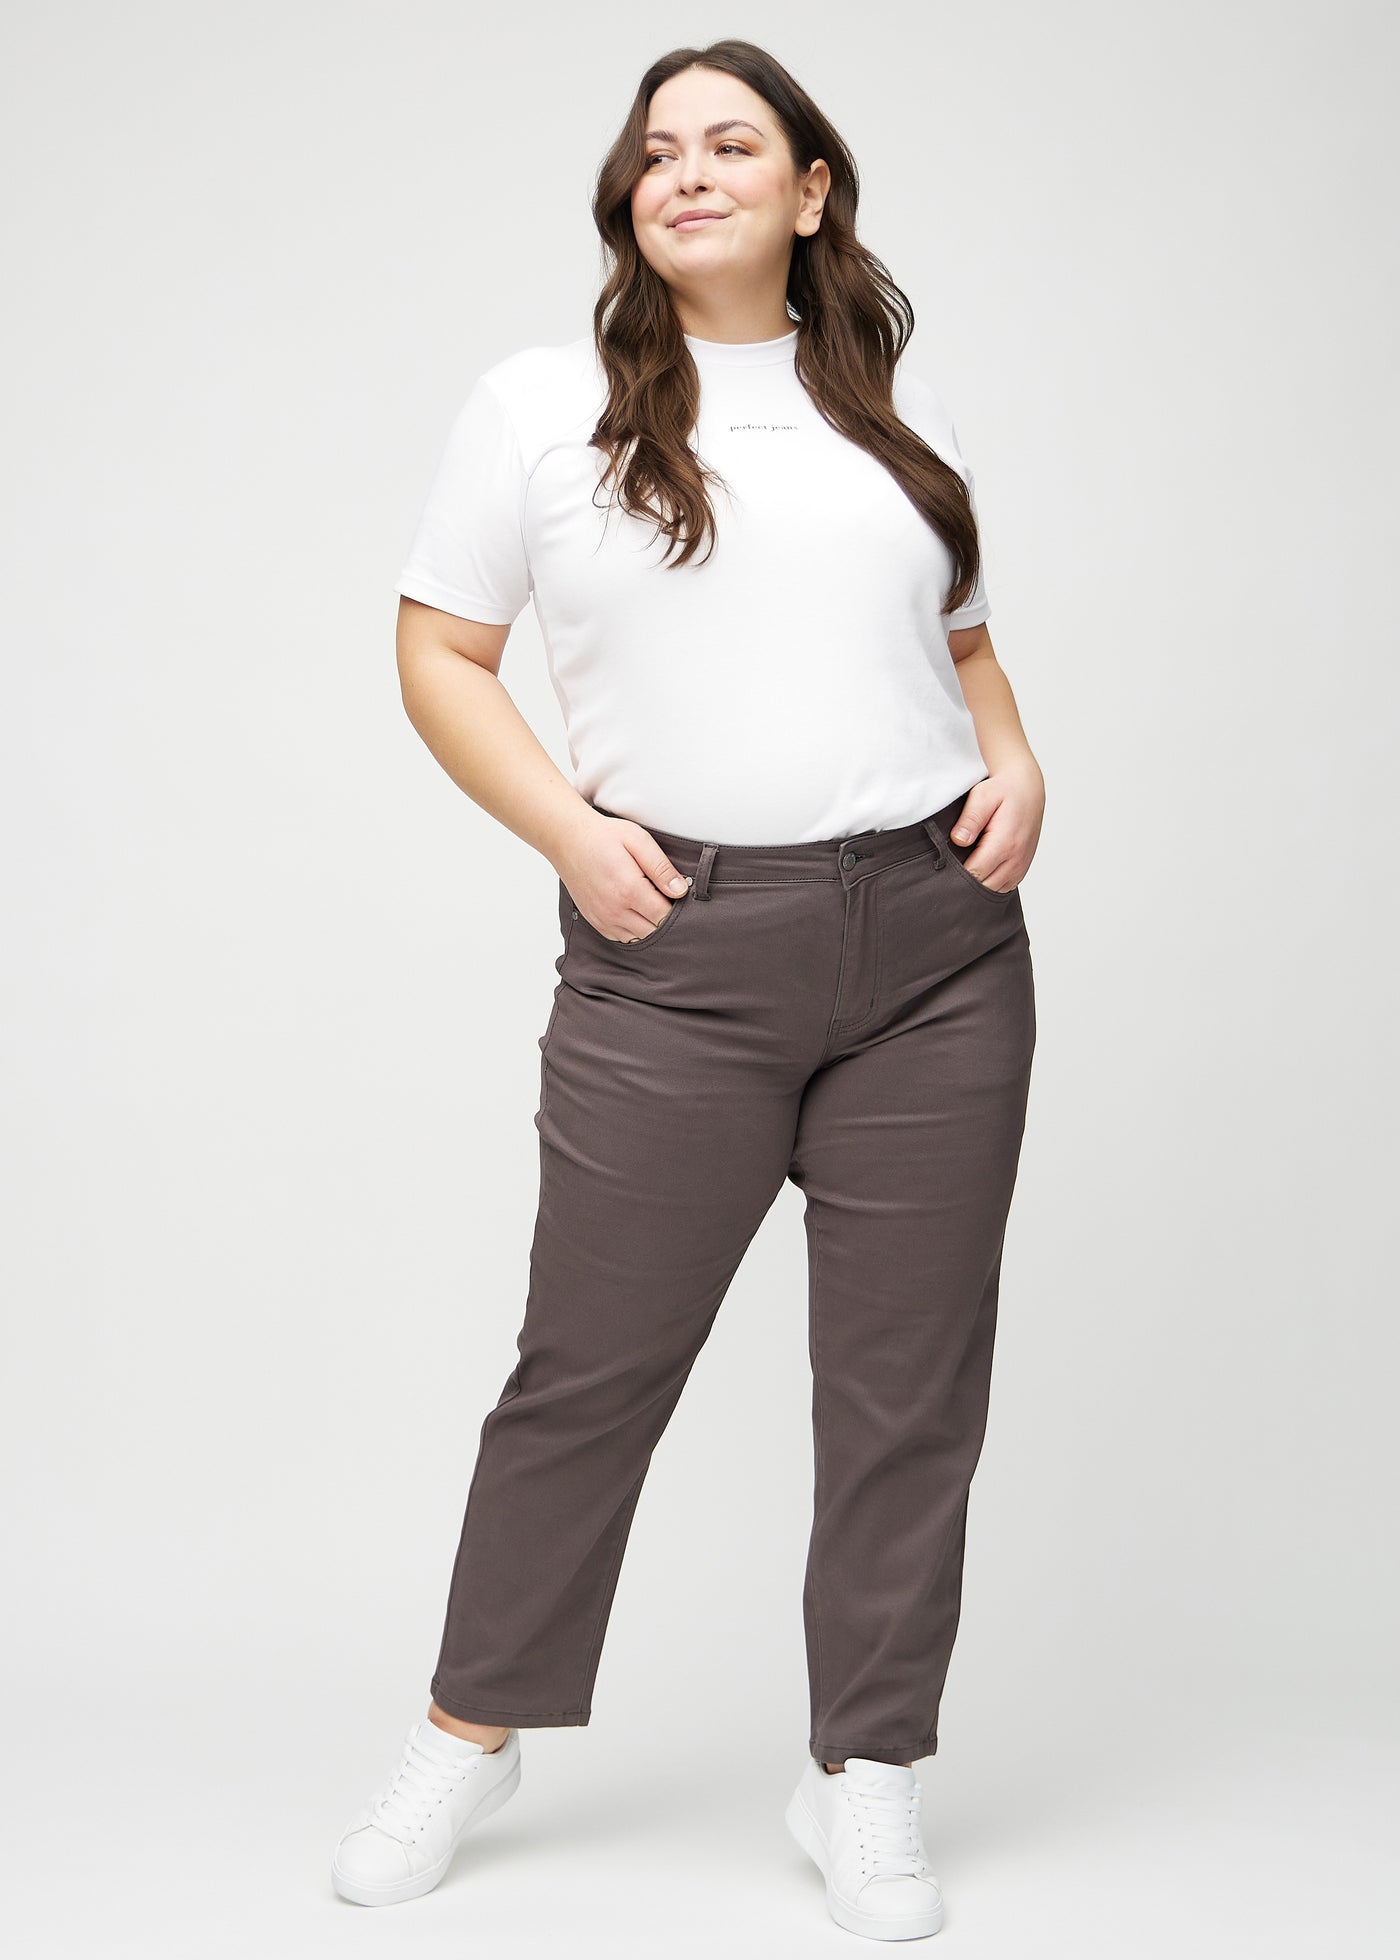 Fuldt billede af en plus-size model i gråbrune regular jeans.